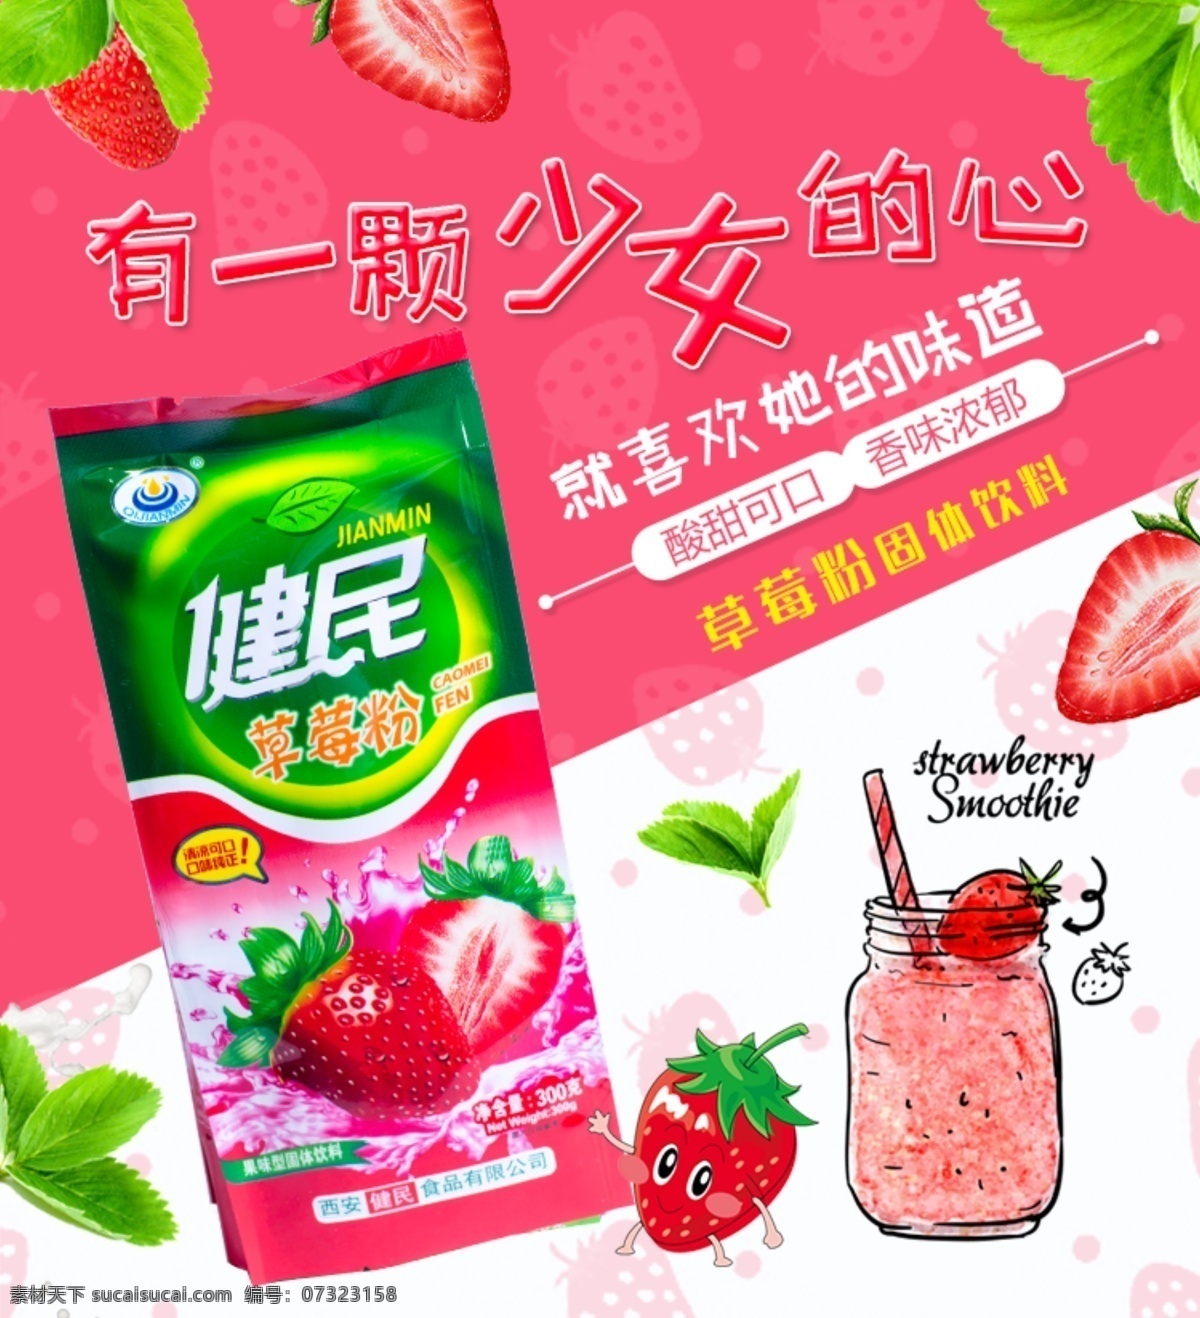 草莓 粉 饮料 淘宝 主 图 饮品 水果主图 果汁 草莓粉